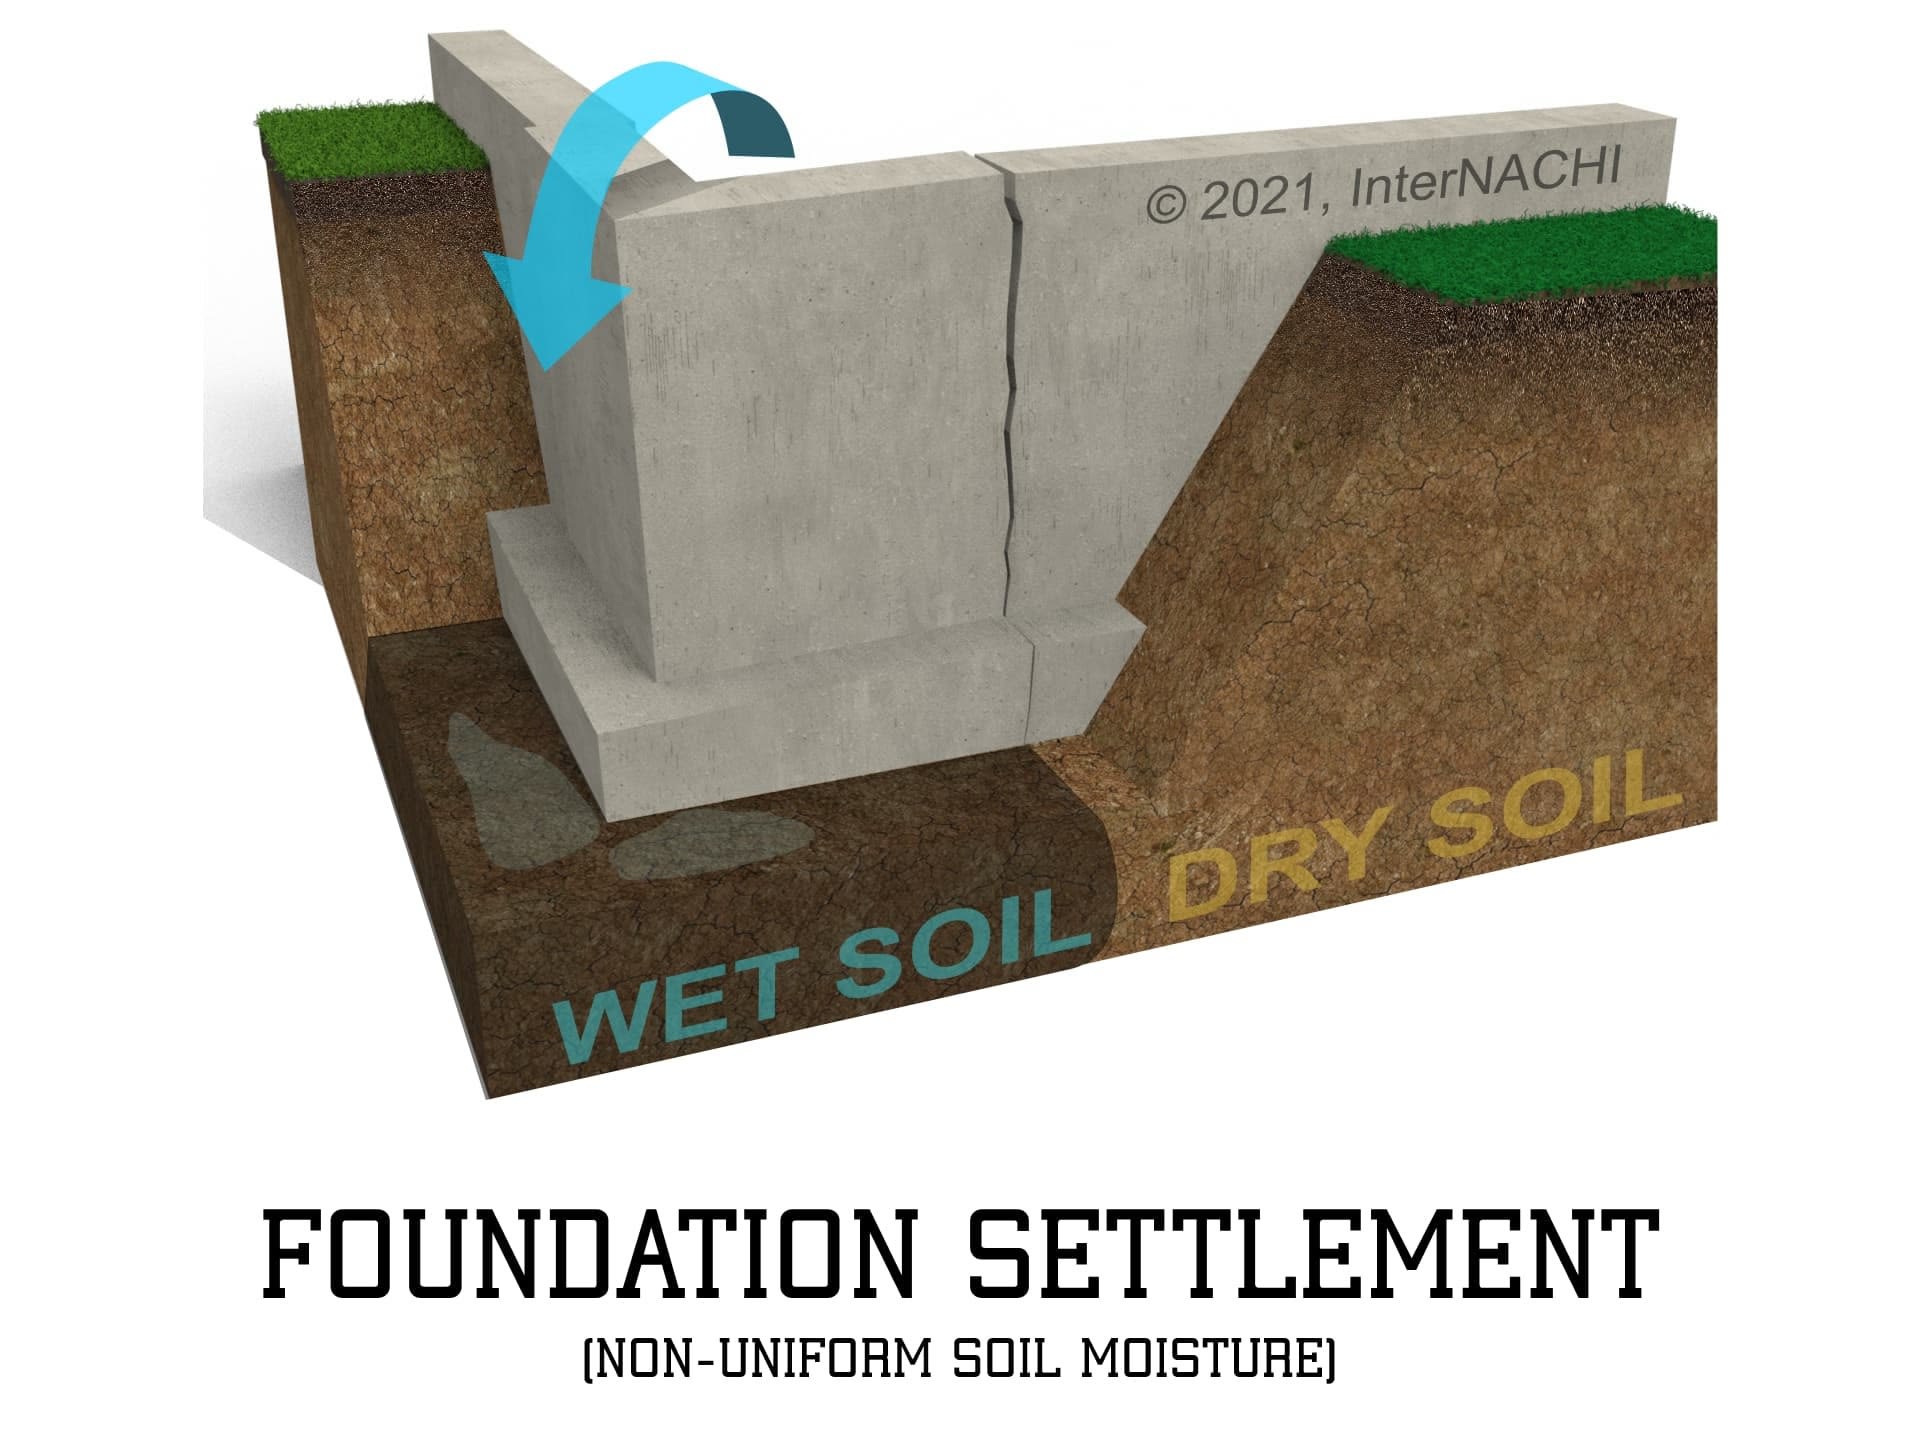 Foundation settlement